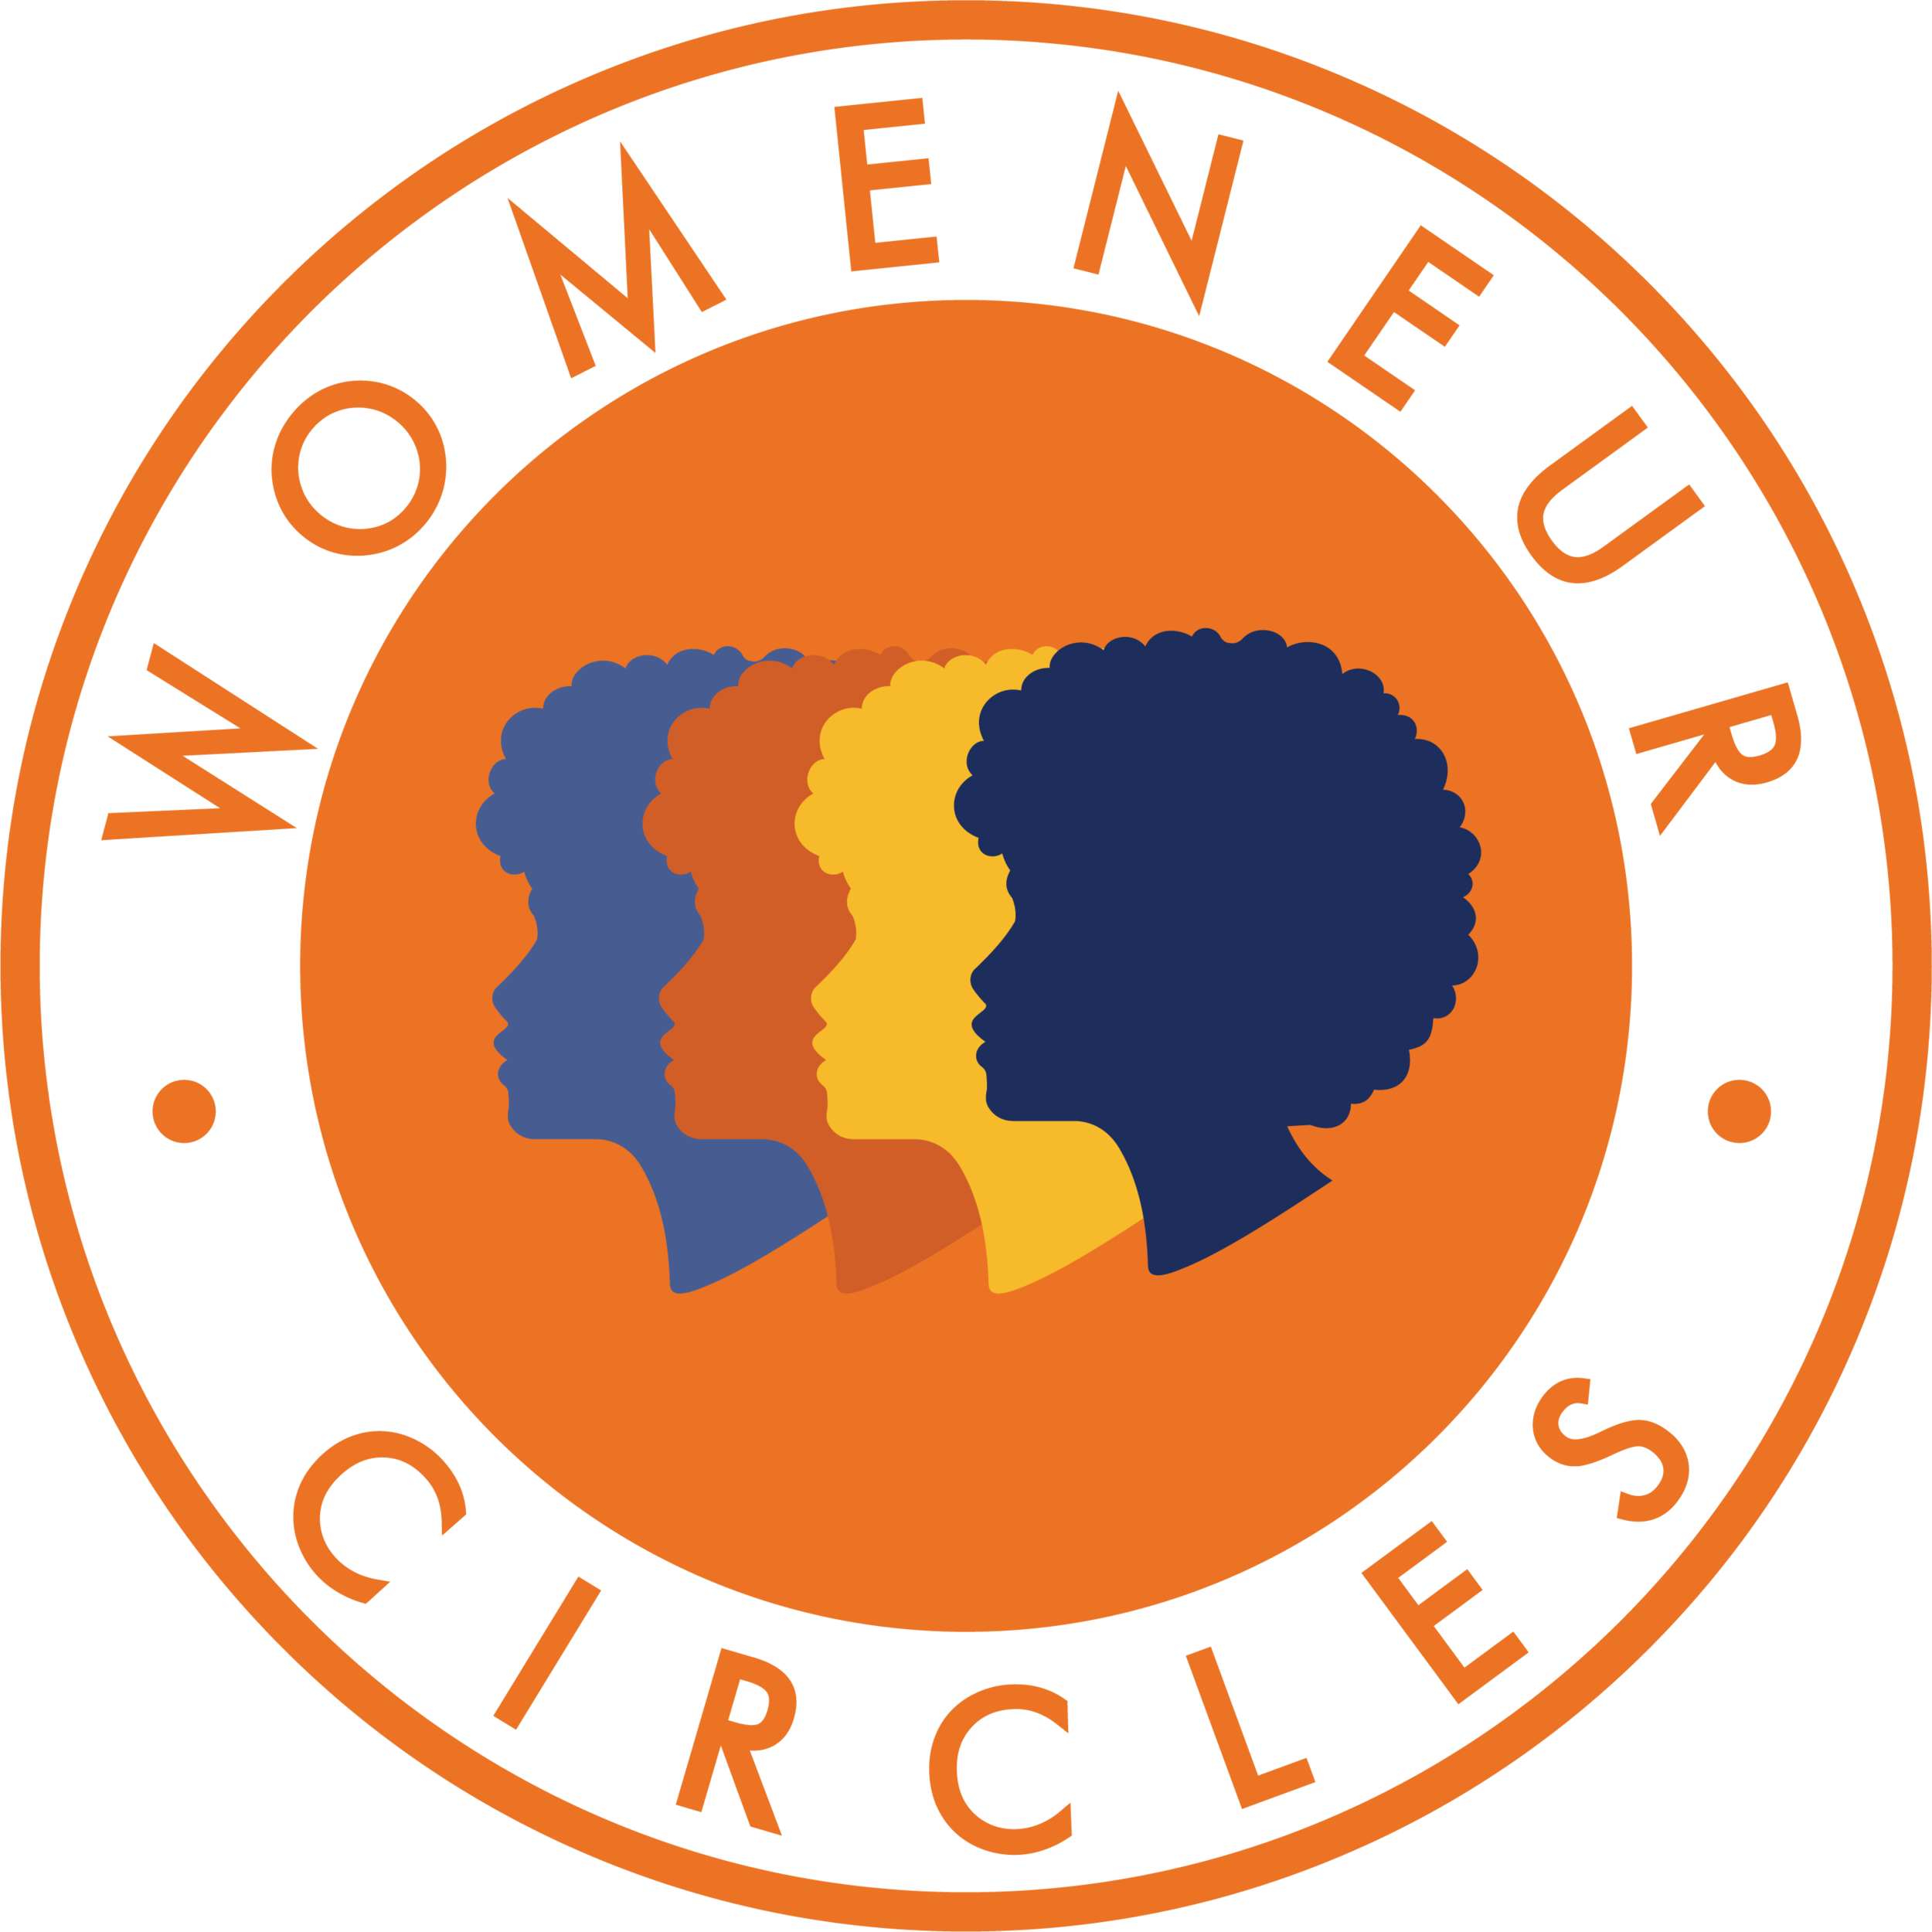 Womeneur Circles logo.png